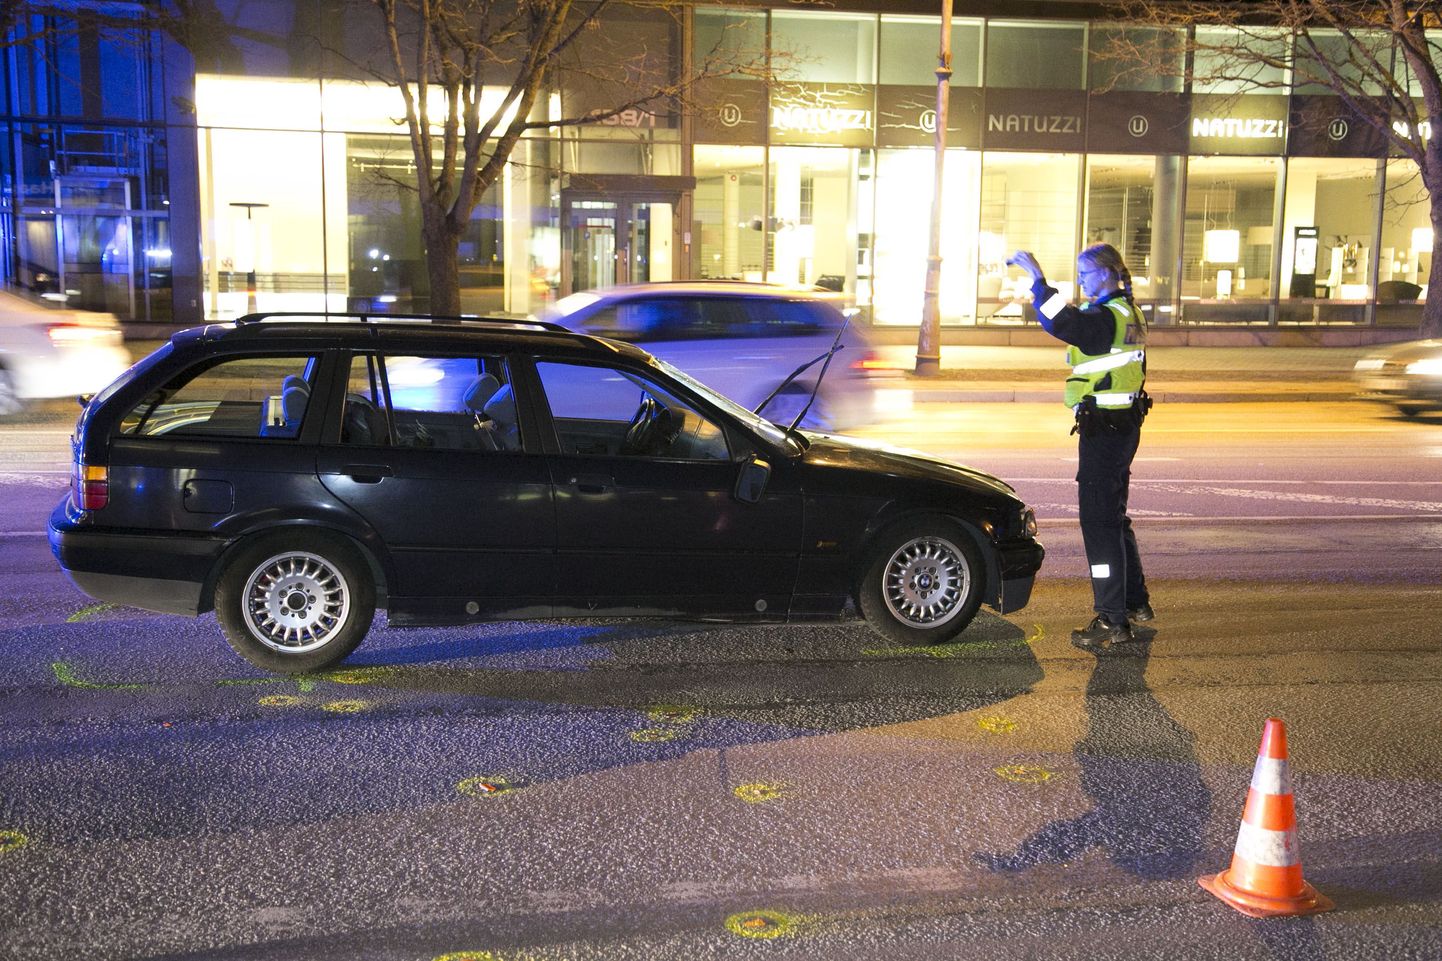 Liiklusõnnetus Pärnu maanteel.